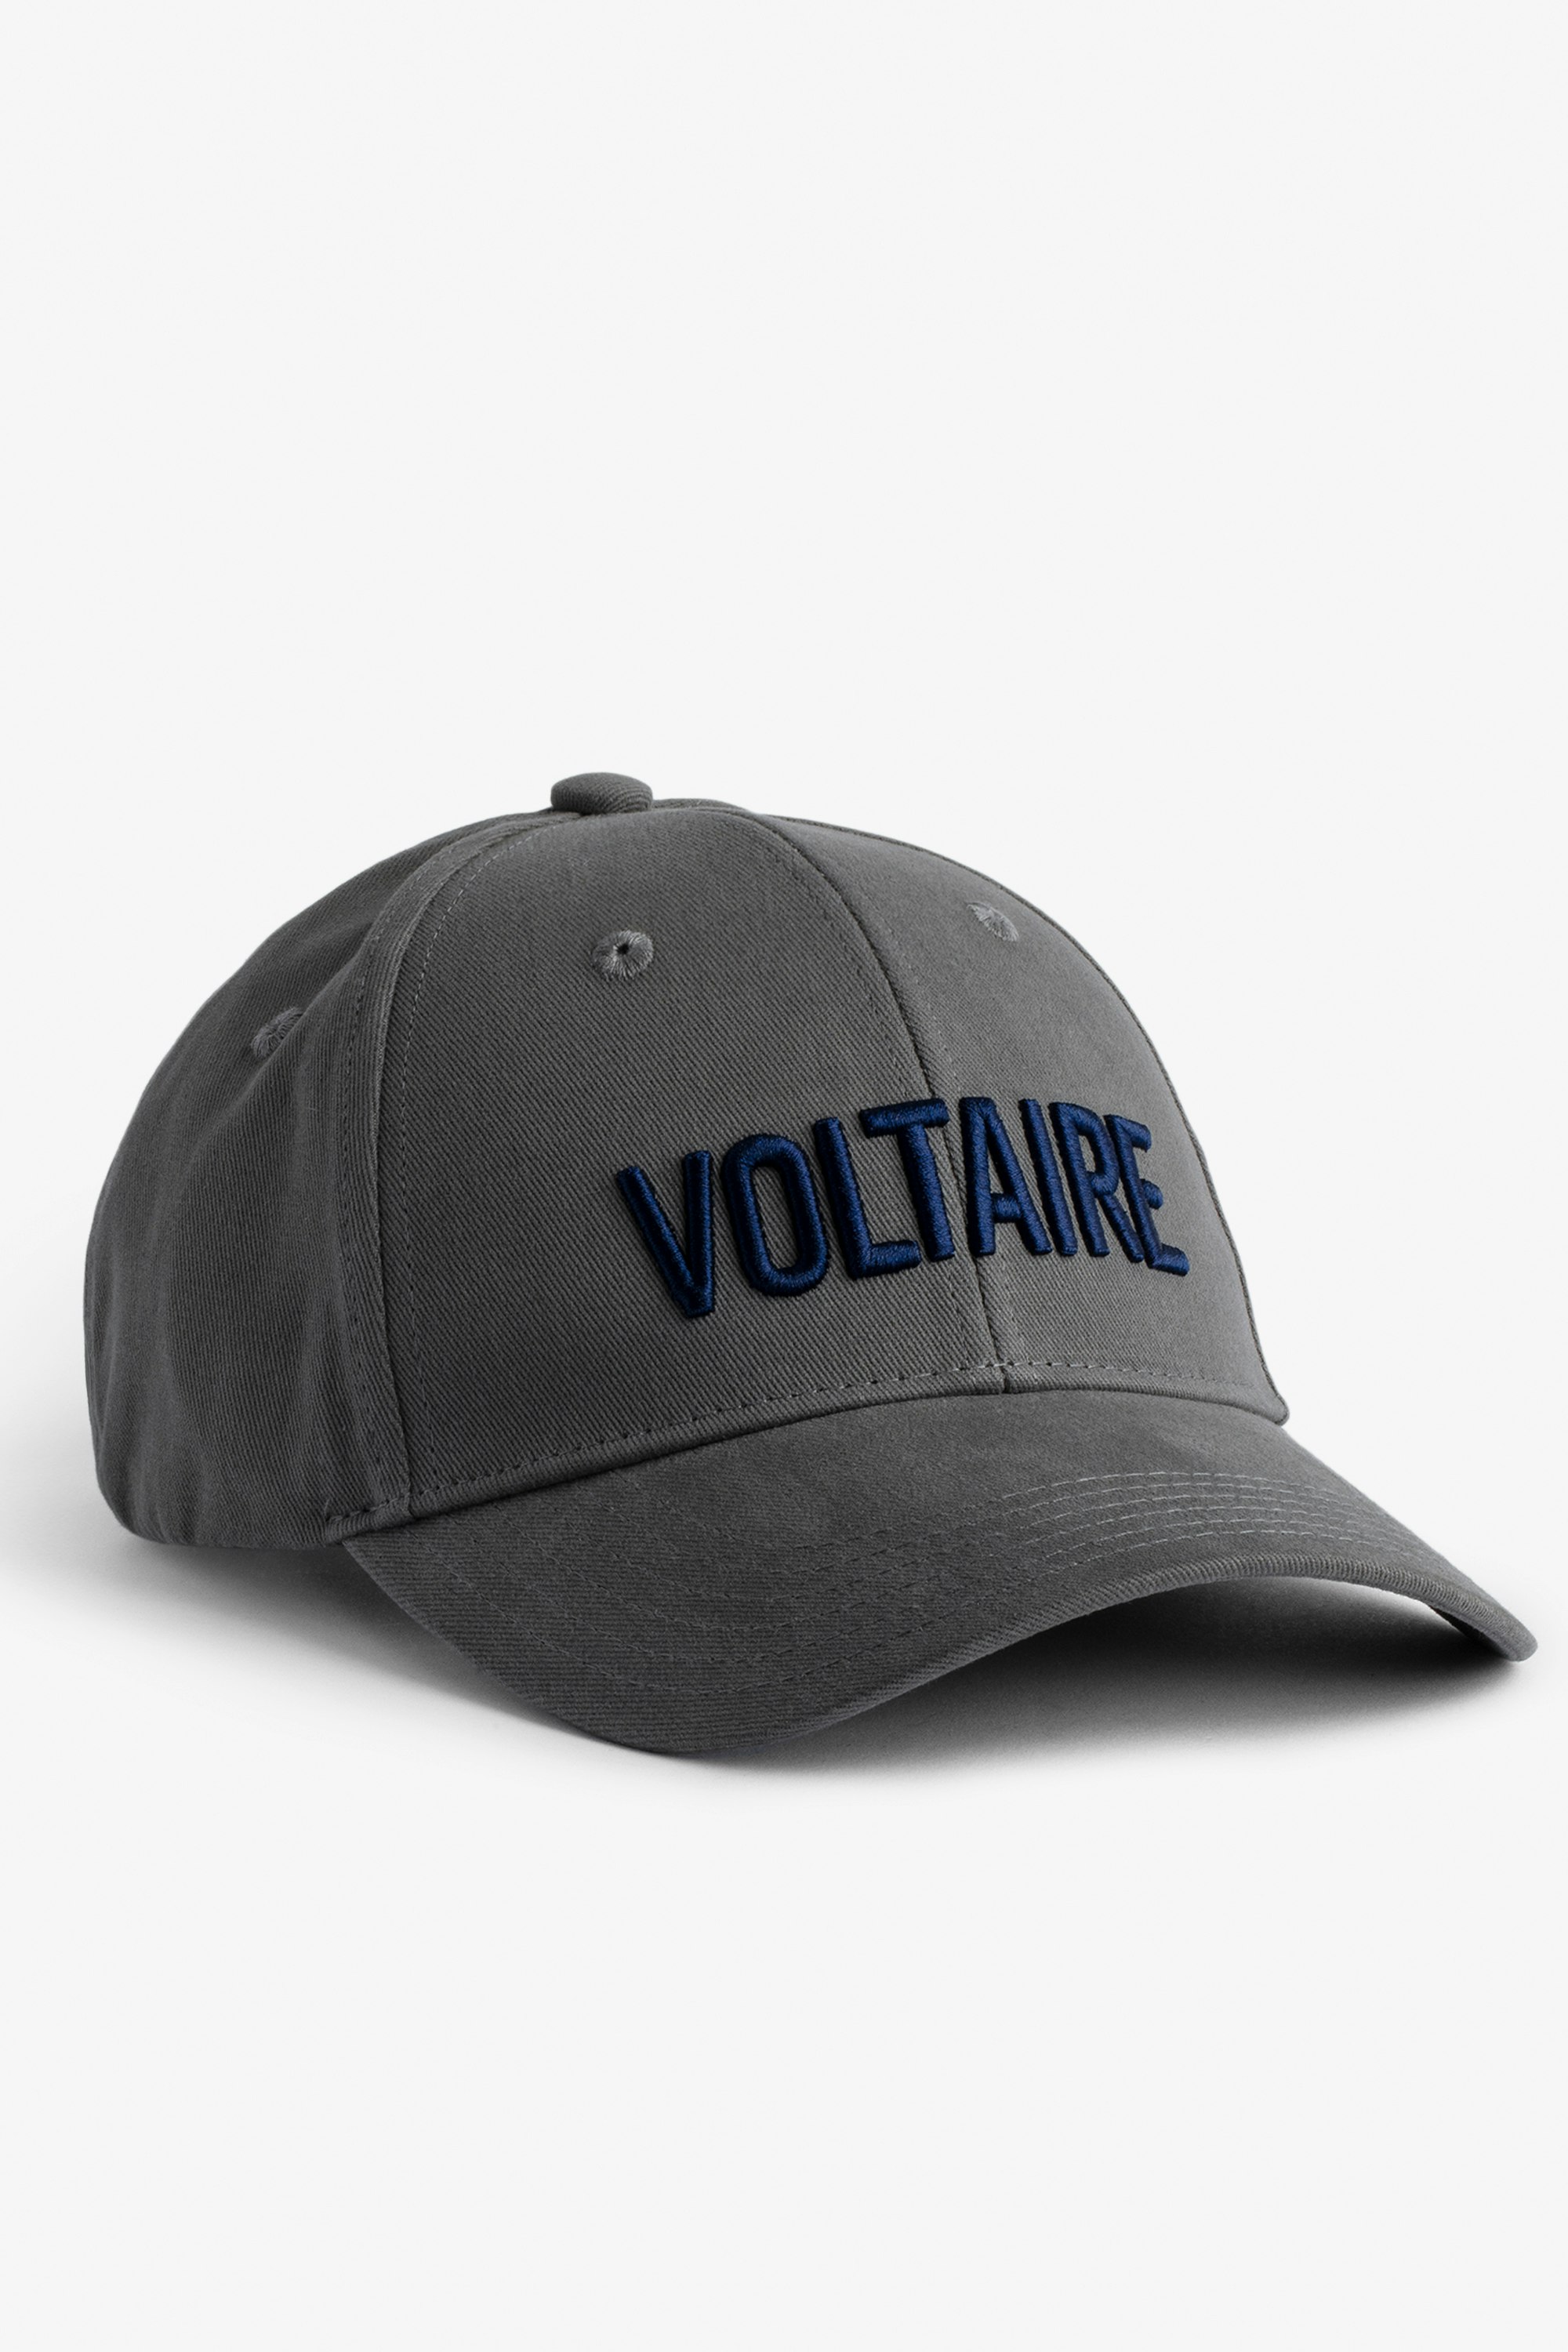 Cappellino Klelia Voltaire Cappellino in cotone grigio con ricamo "Voltaire" - Uomo.